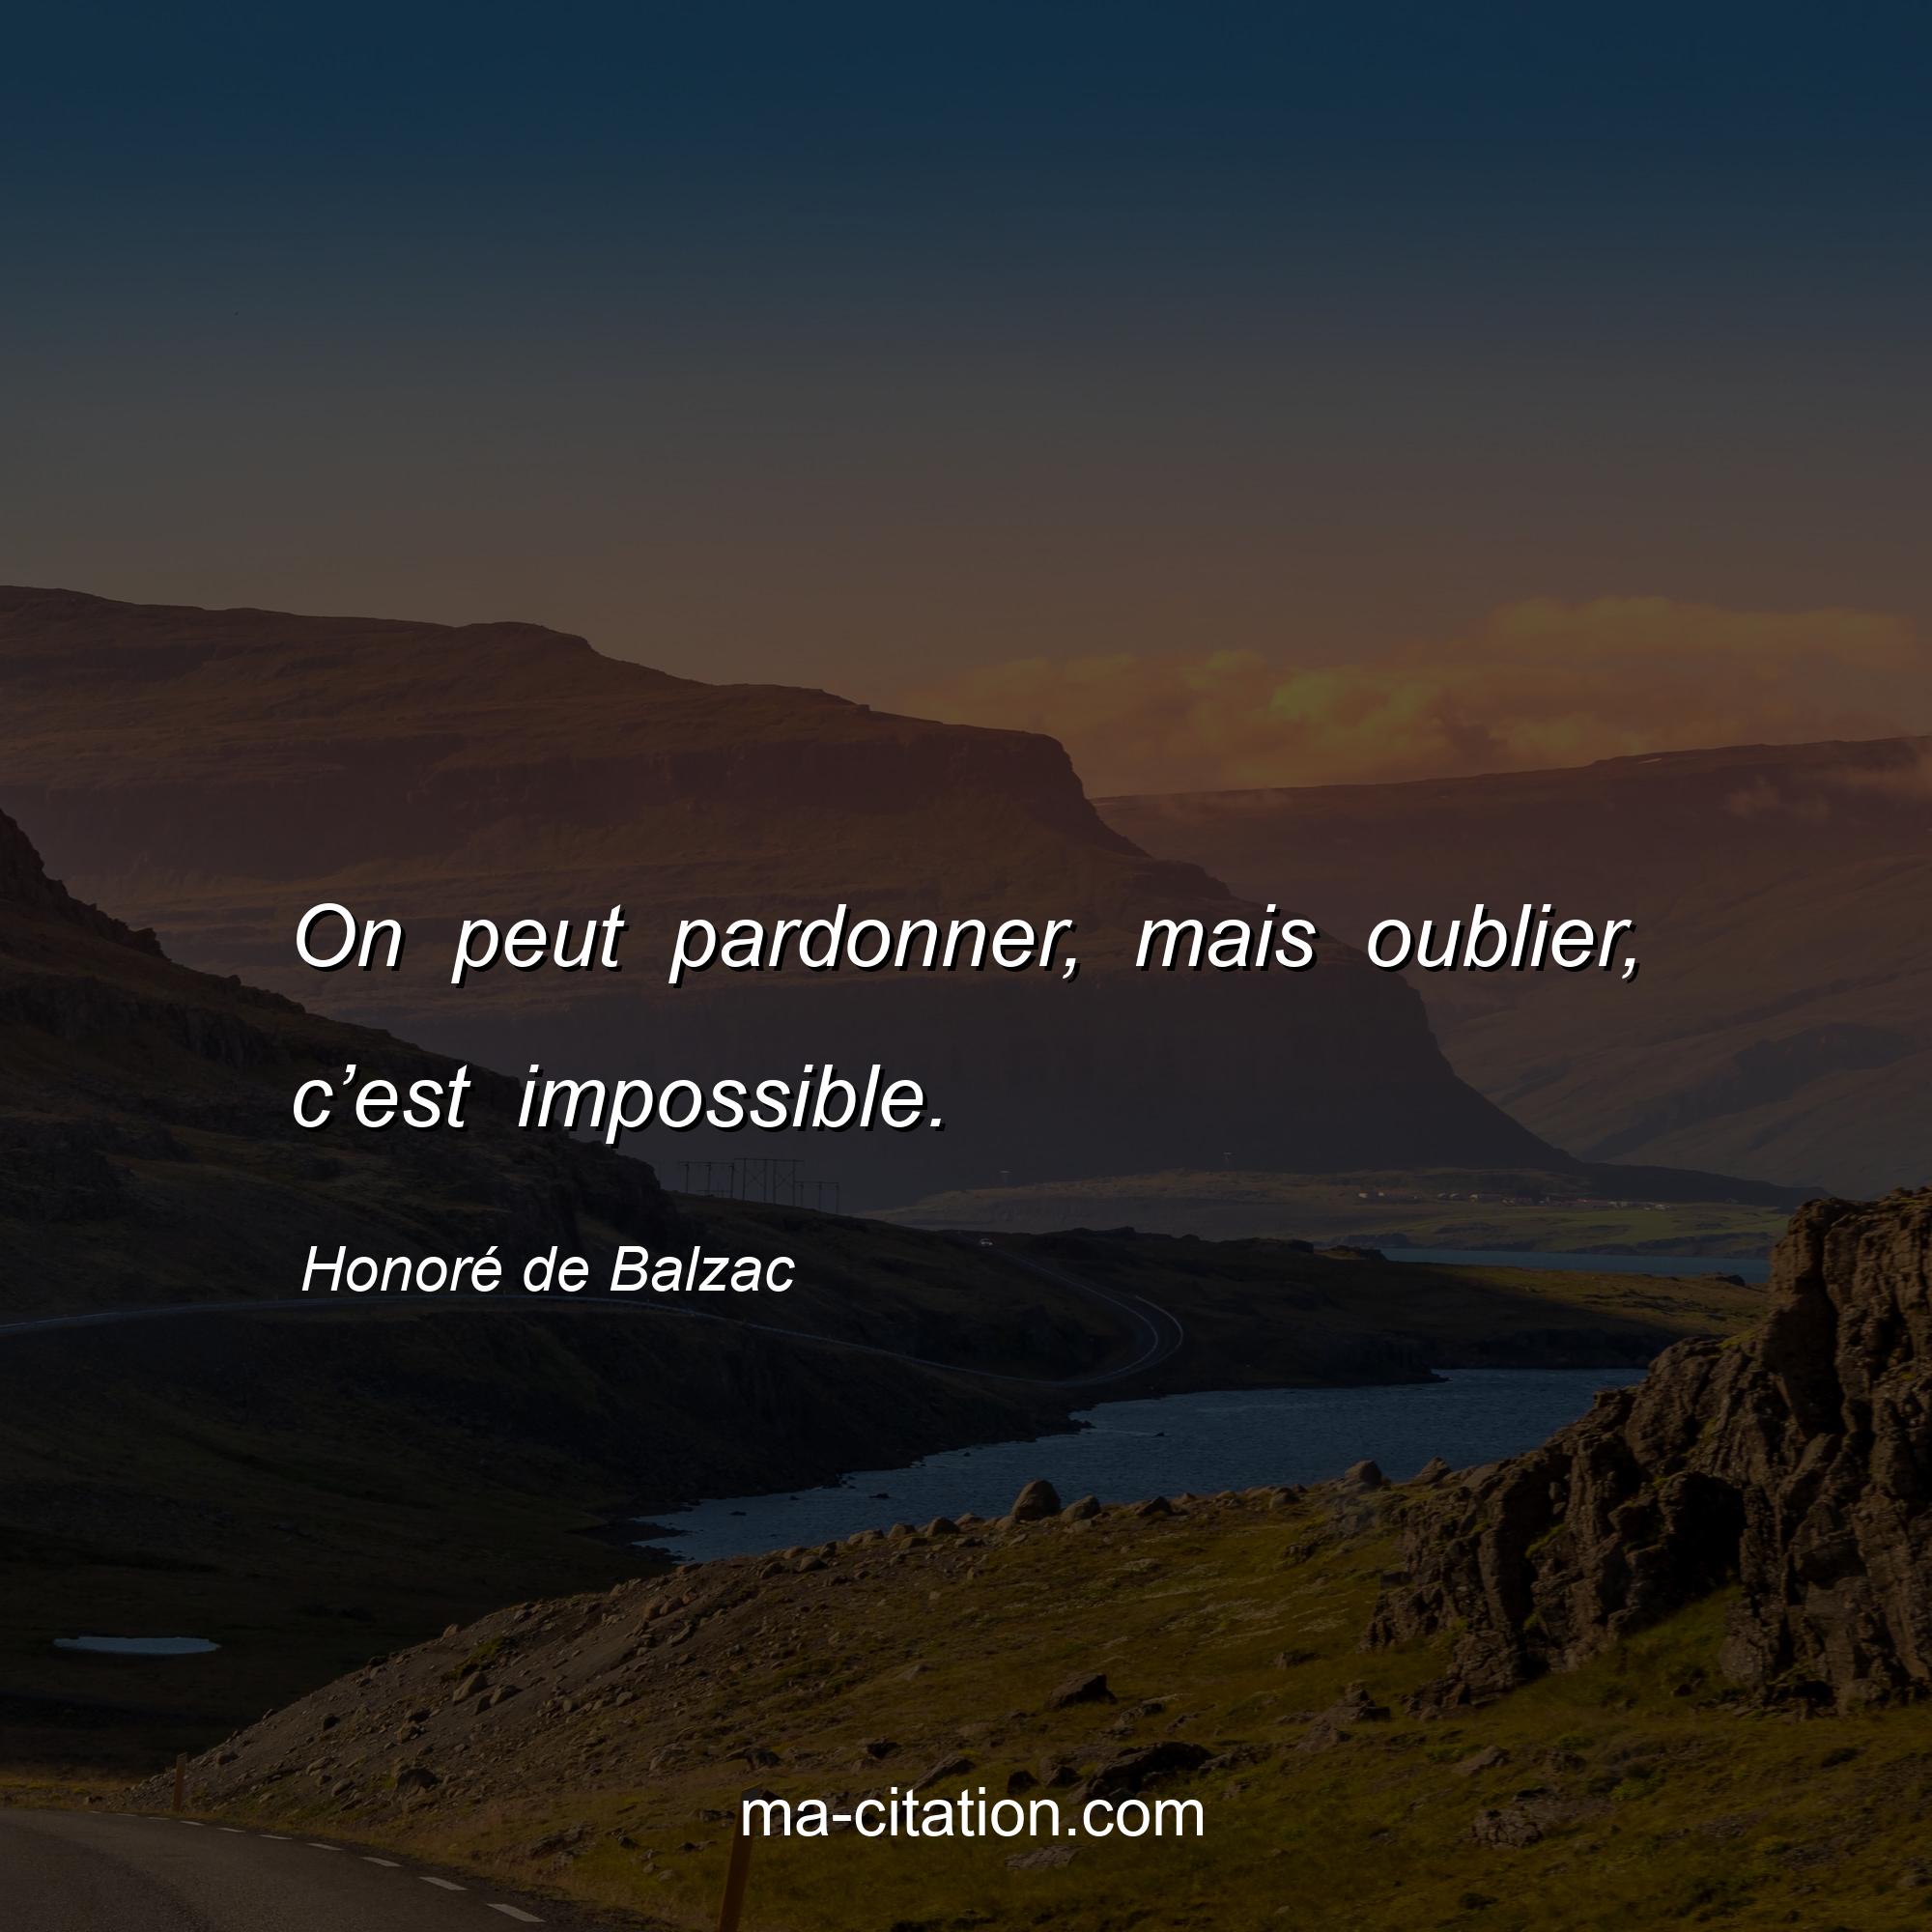 Honoré de Balzac : On peut pardonner, mais oublier, c’est impossible.